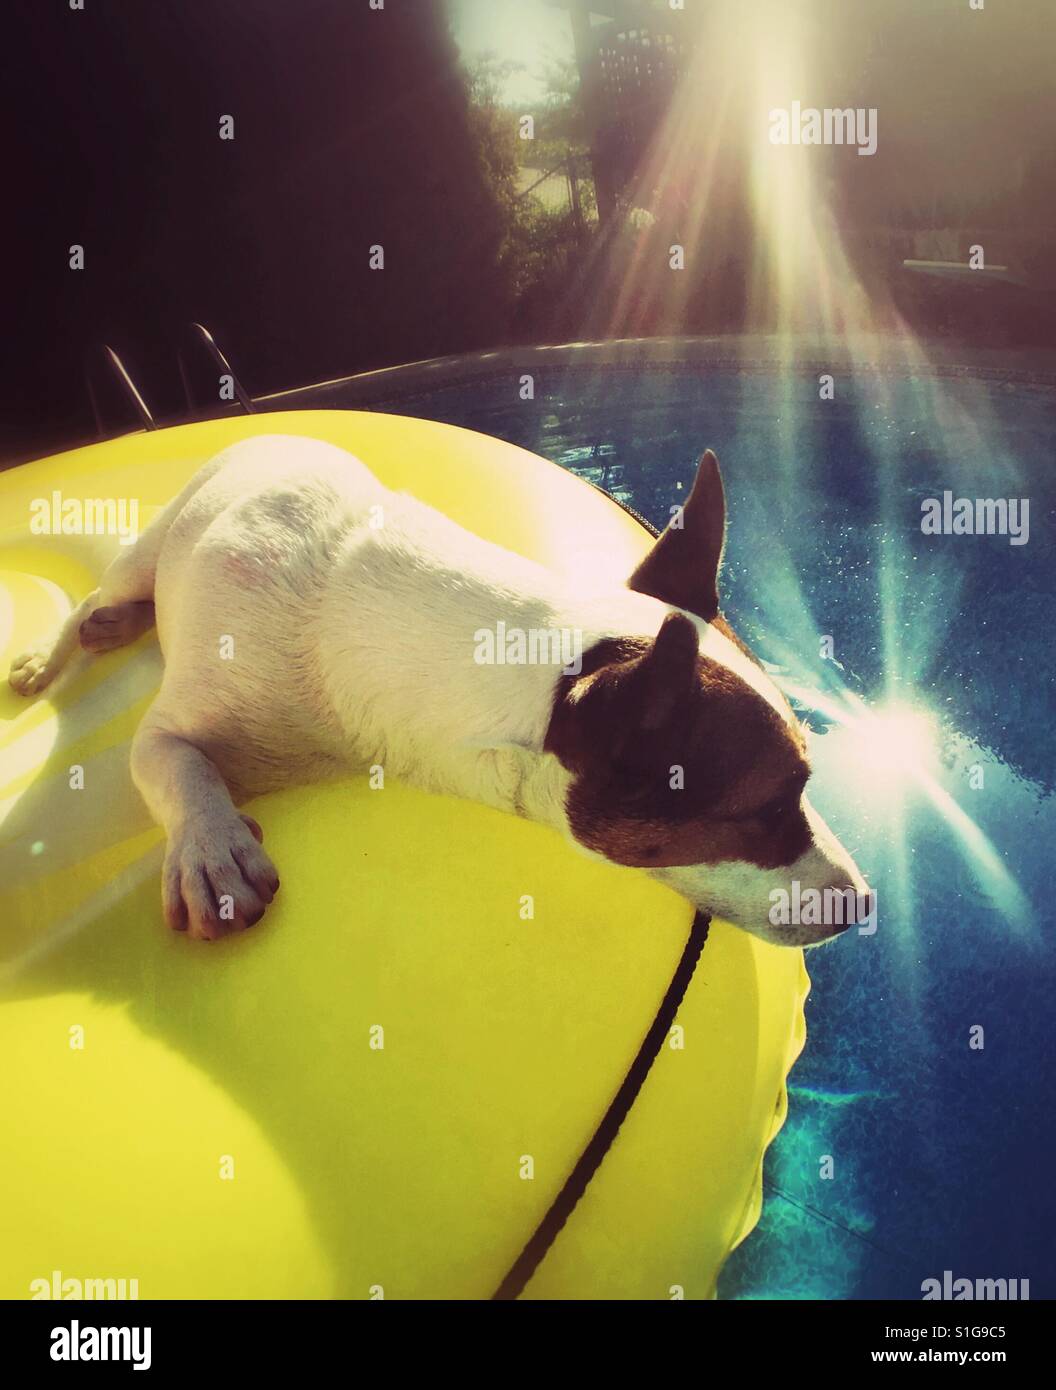 Hund auf einem gelben Pool Schwimmer in einem Schwimmbad an einem heißen sonnigen Tag entspannen. Stockfoto